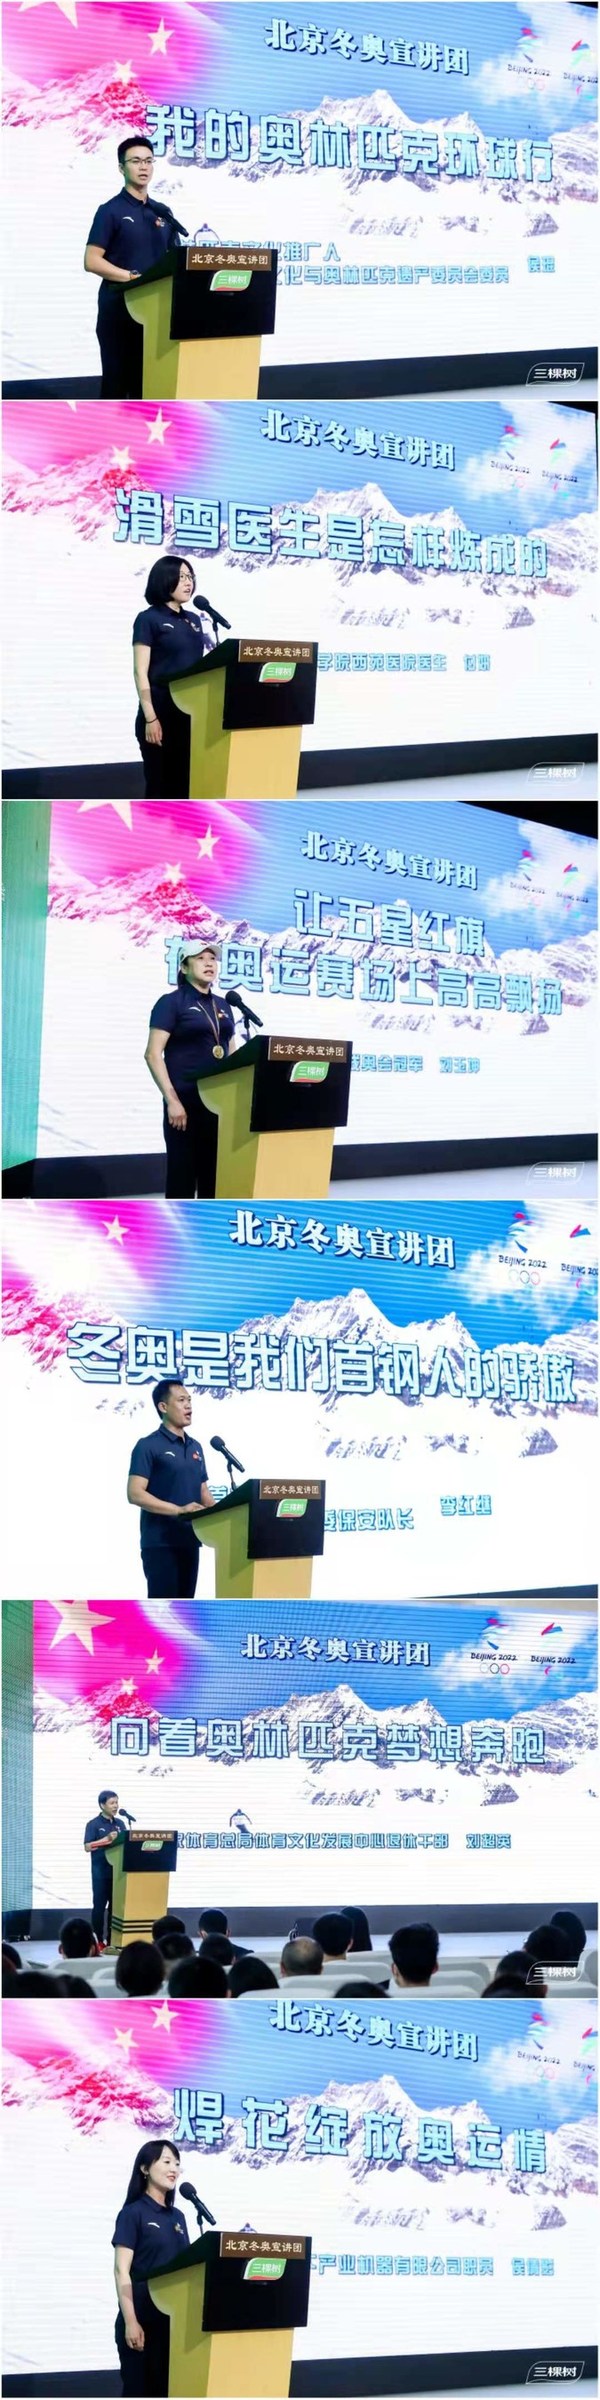 北京冬奥宣讲团成员们演讲